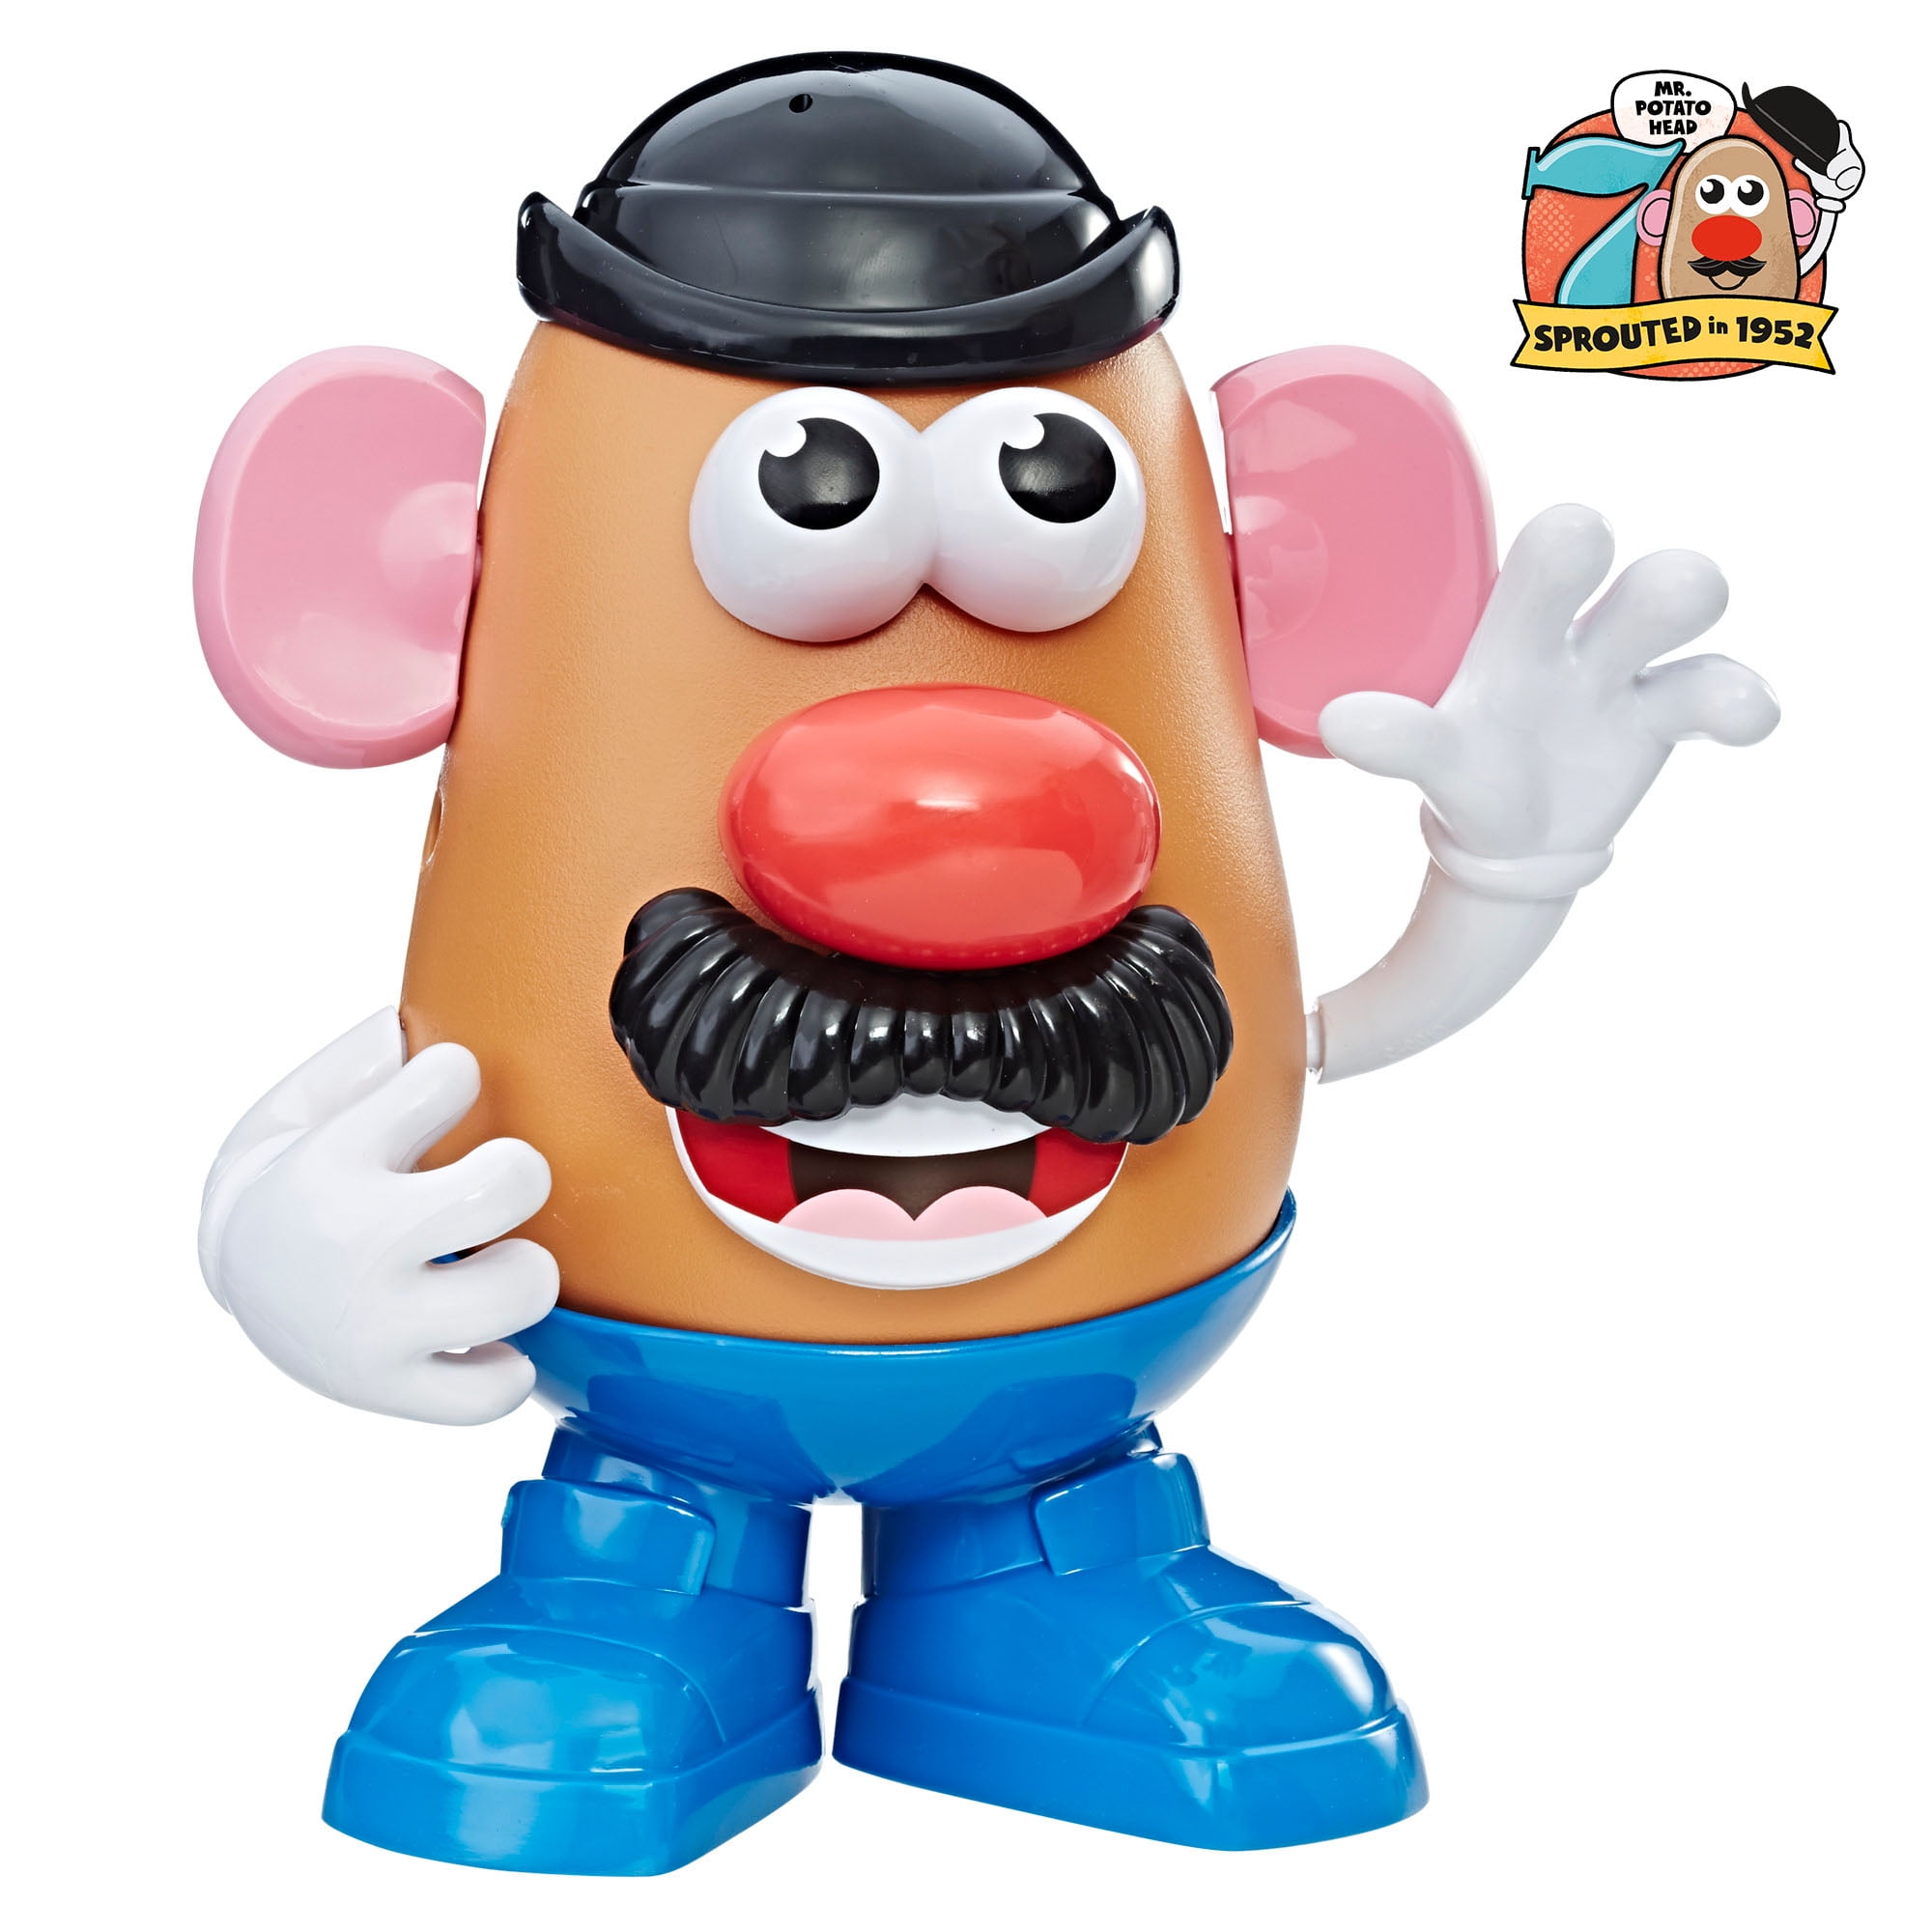 Potato Head Figure for sale online Playskool Friends Mrs